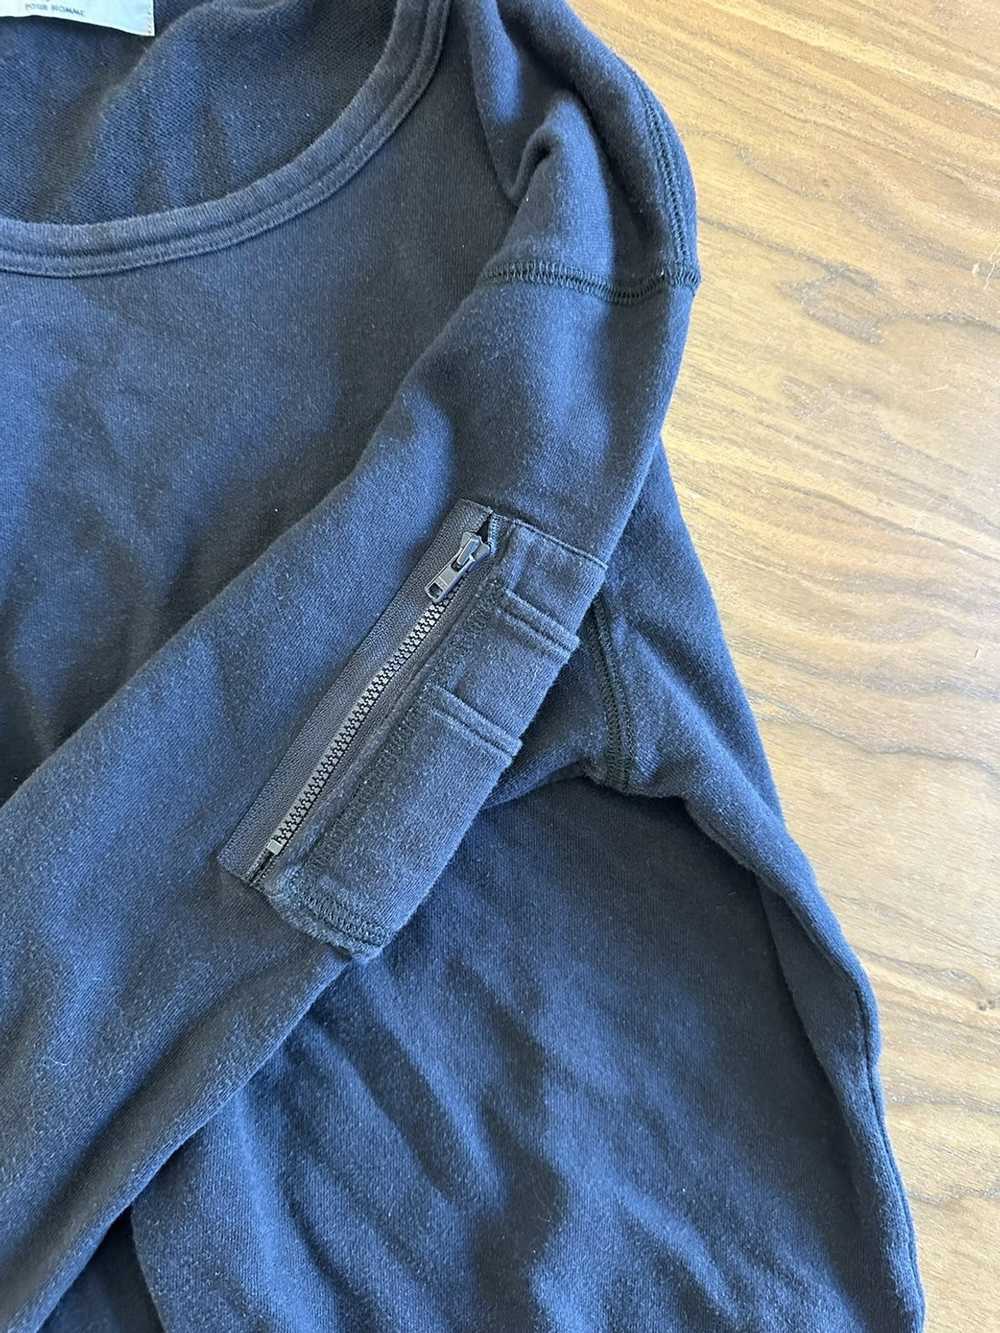 Yohji Yamamoto MA-1 sweater - image 4